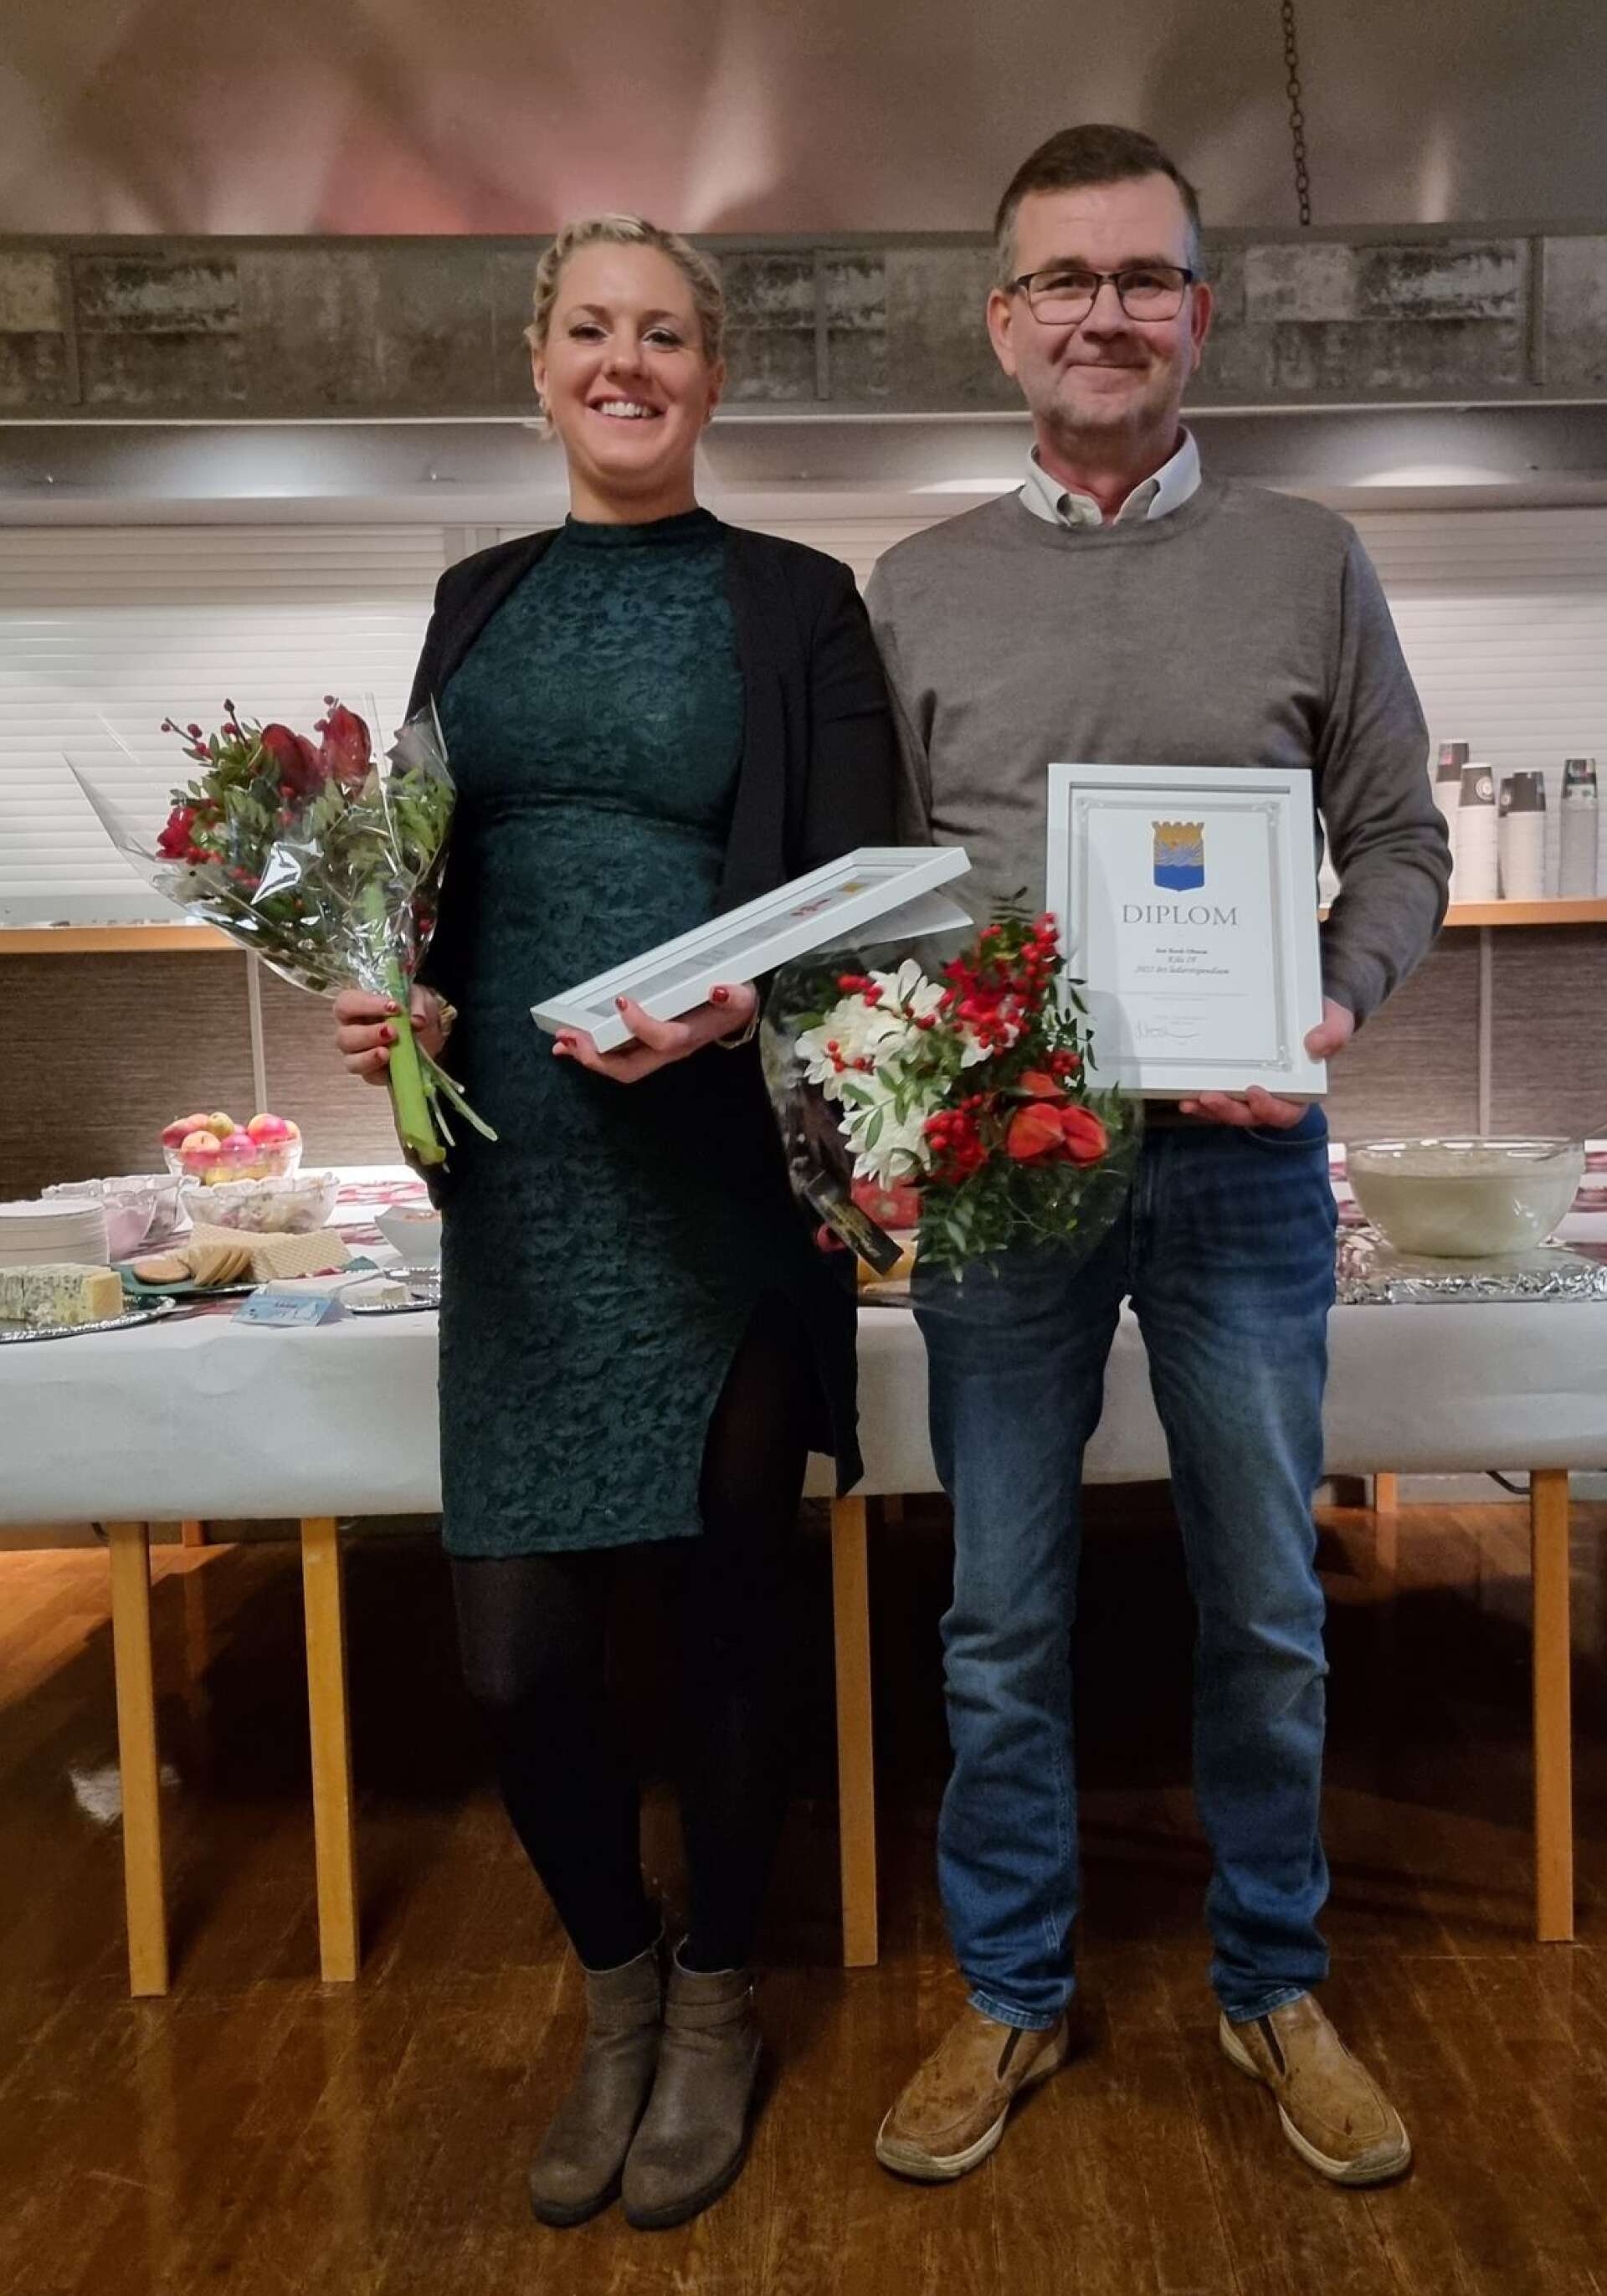 IFK Åmåls ungdomstränare i handboll, Emma Moberg, och Jan Rask Olsson, Kila IF fotboll, fick ta emot pris på Medborgarhuset i Säffle av teknik- och fritidsnämnden Säffle-Åmål som Årets ledare i Åmåls respektive Säffle kommun.